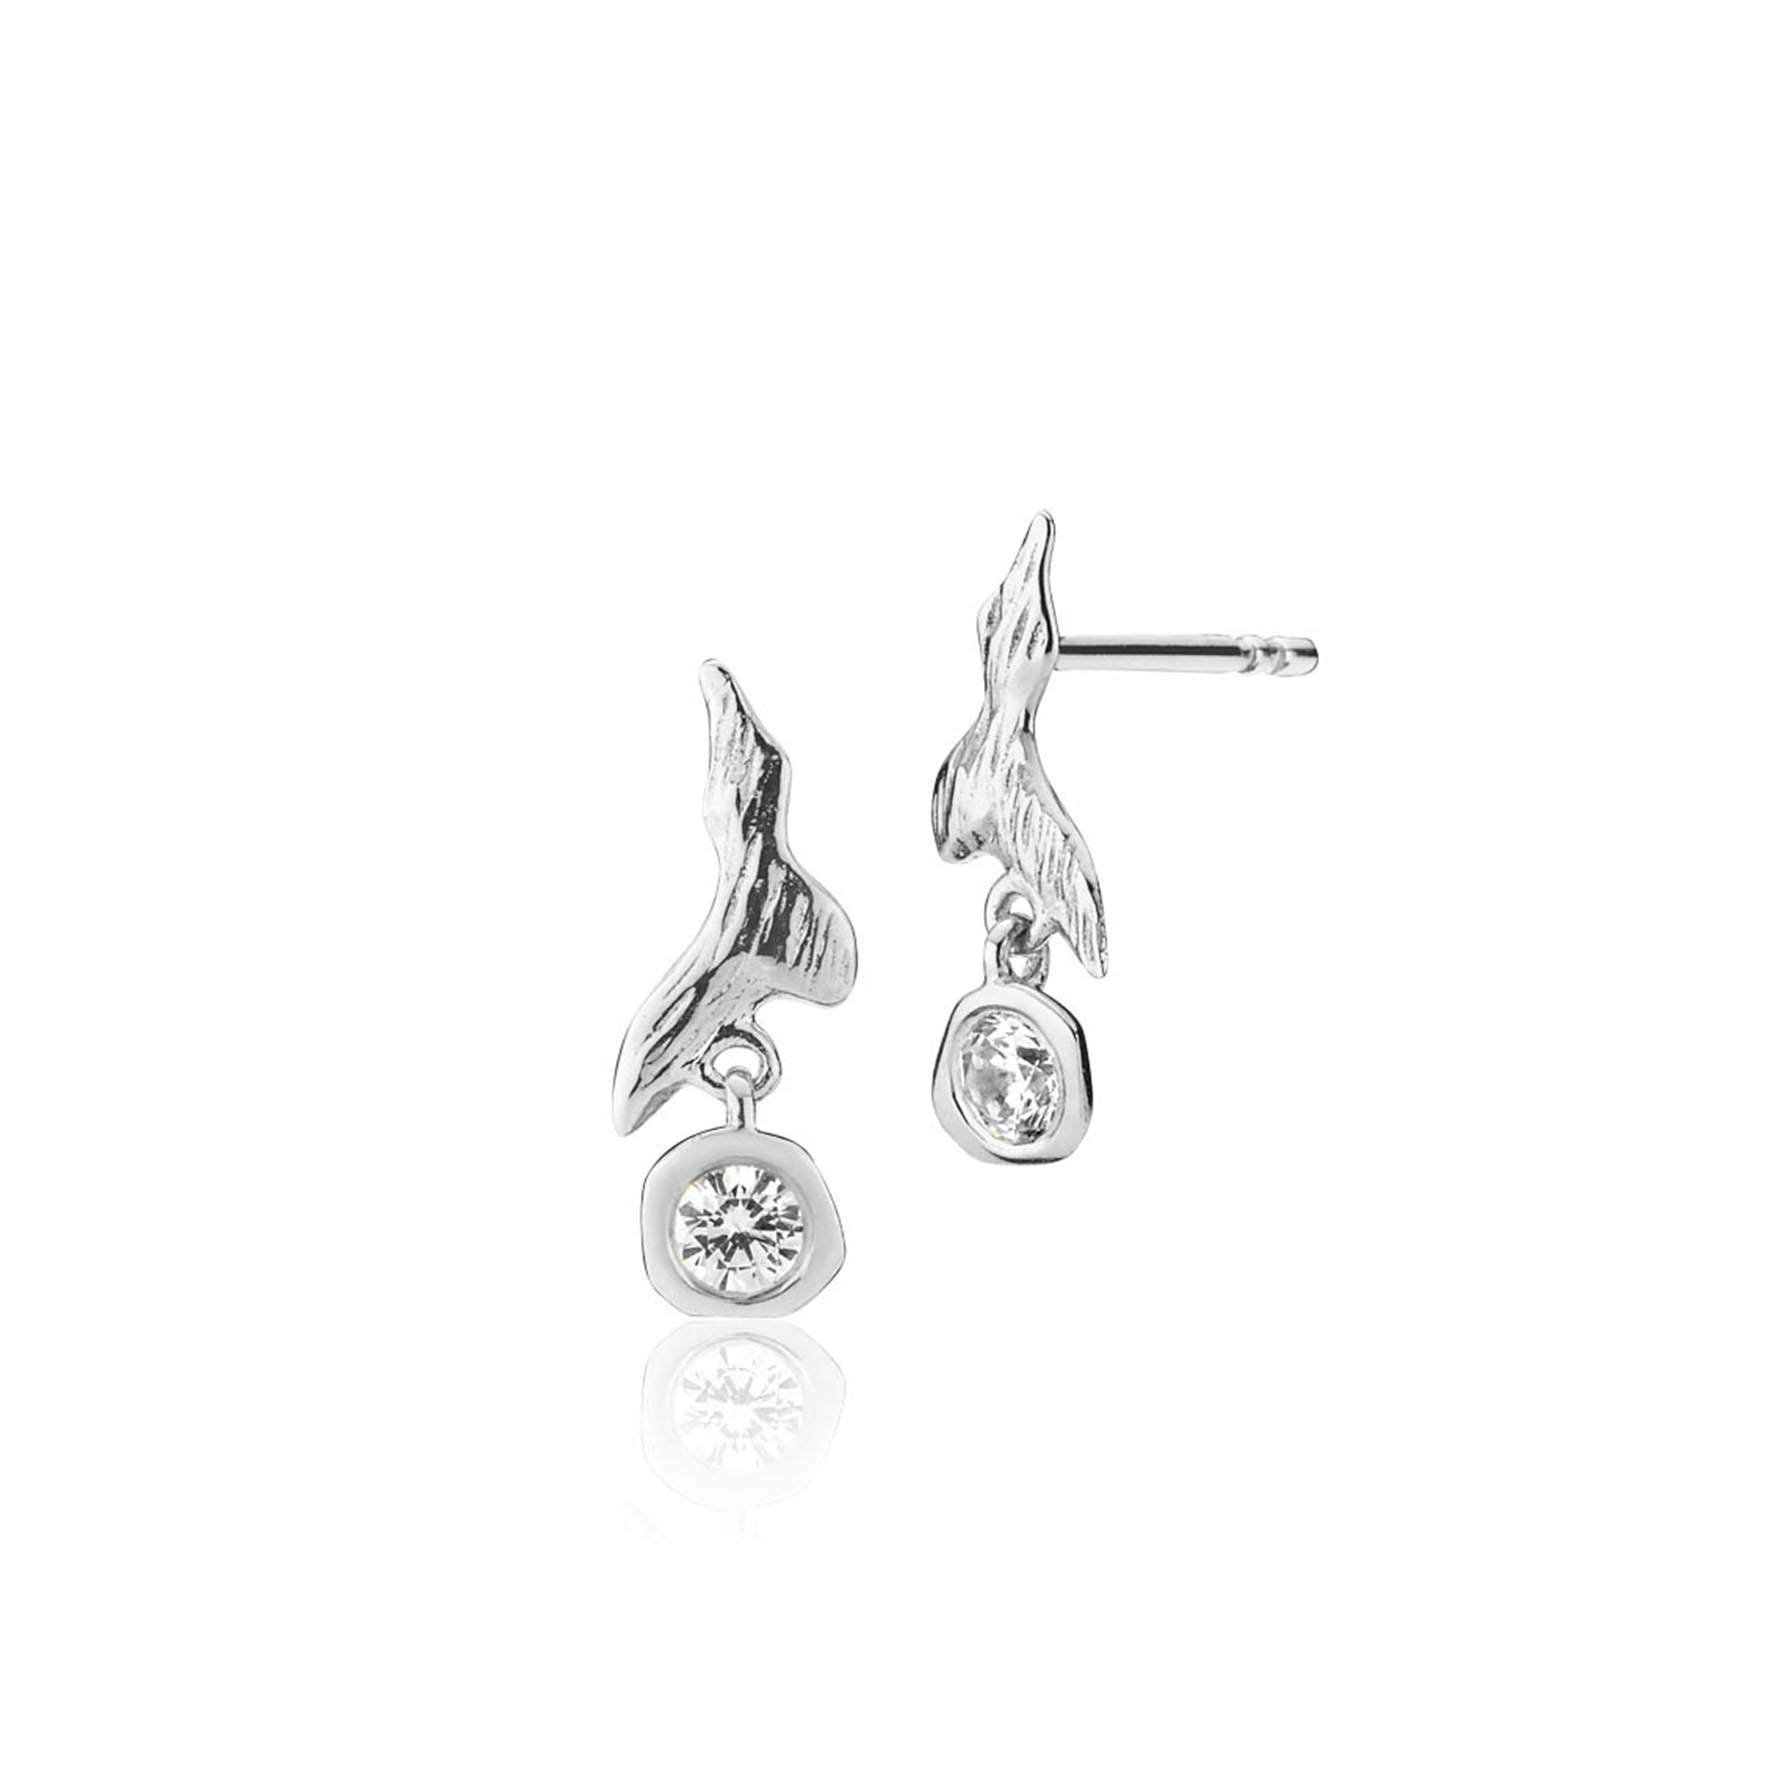 Fairy Earrings With Stone fra Izabel Camille i Sølv Sterling 925|Zircons